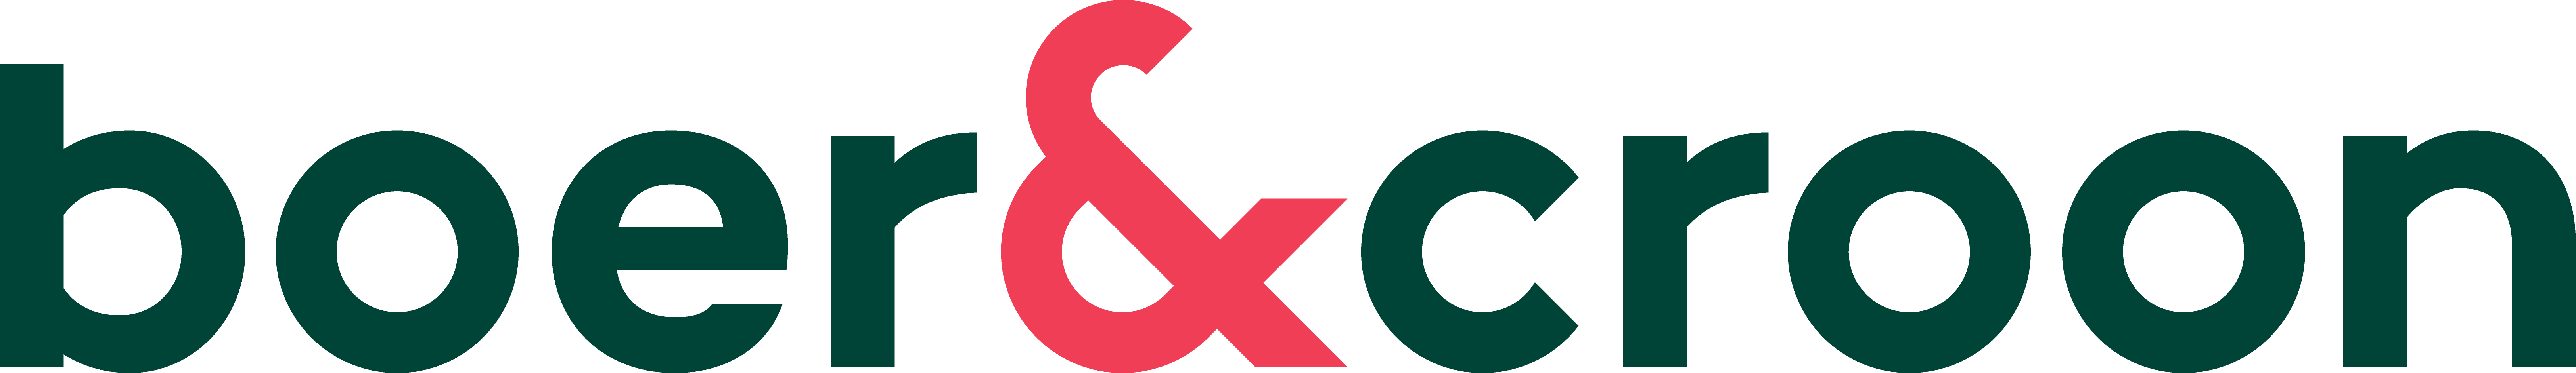 Boer&Croon_Logo_CMYK